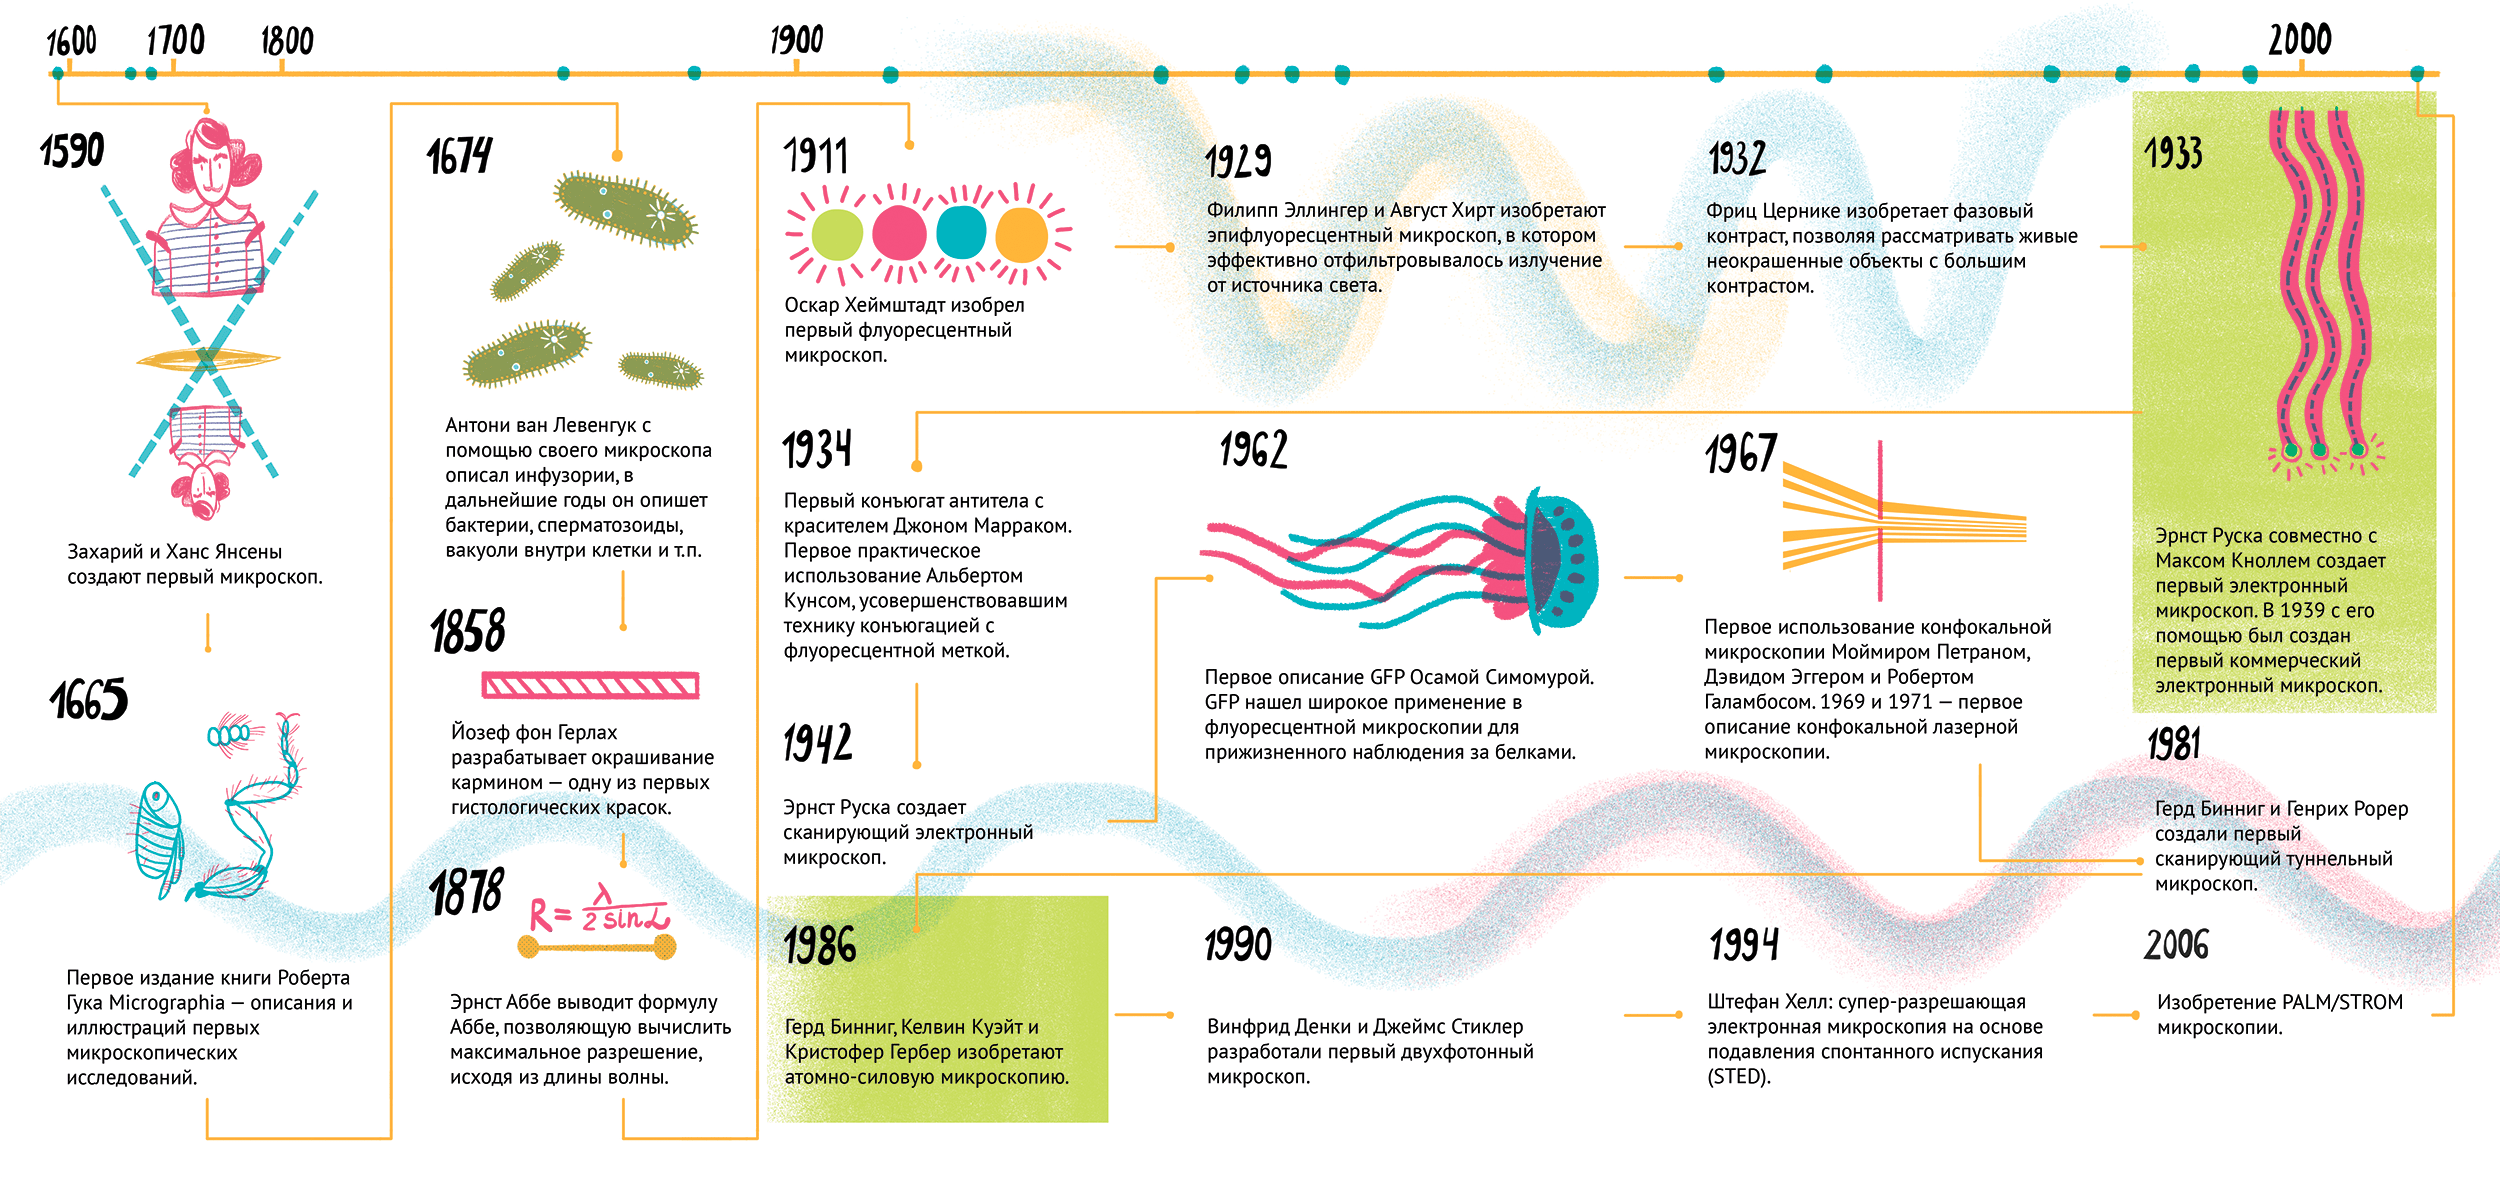 История микроскопии